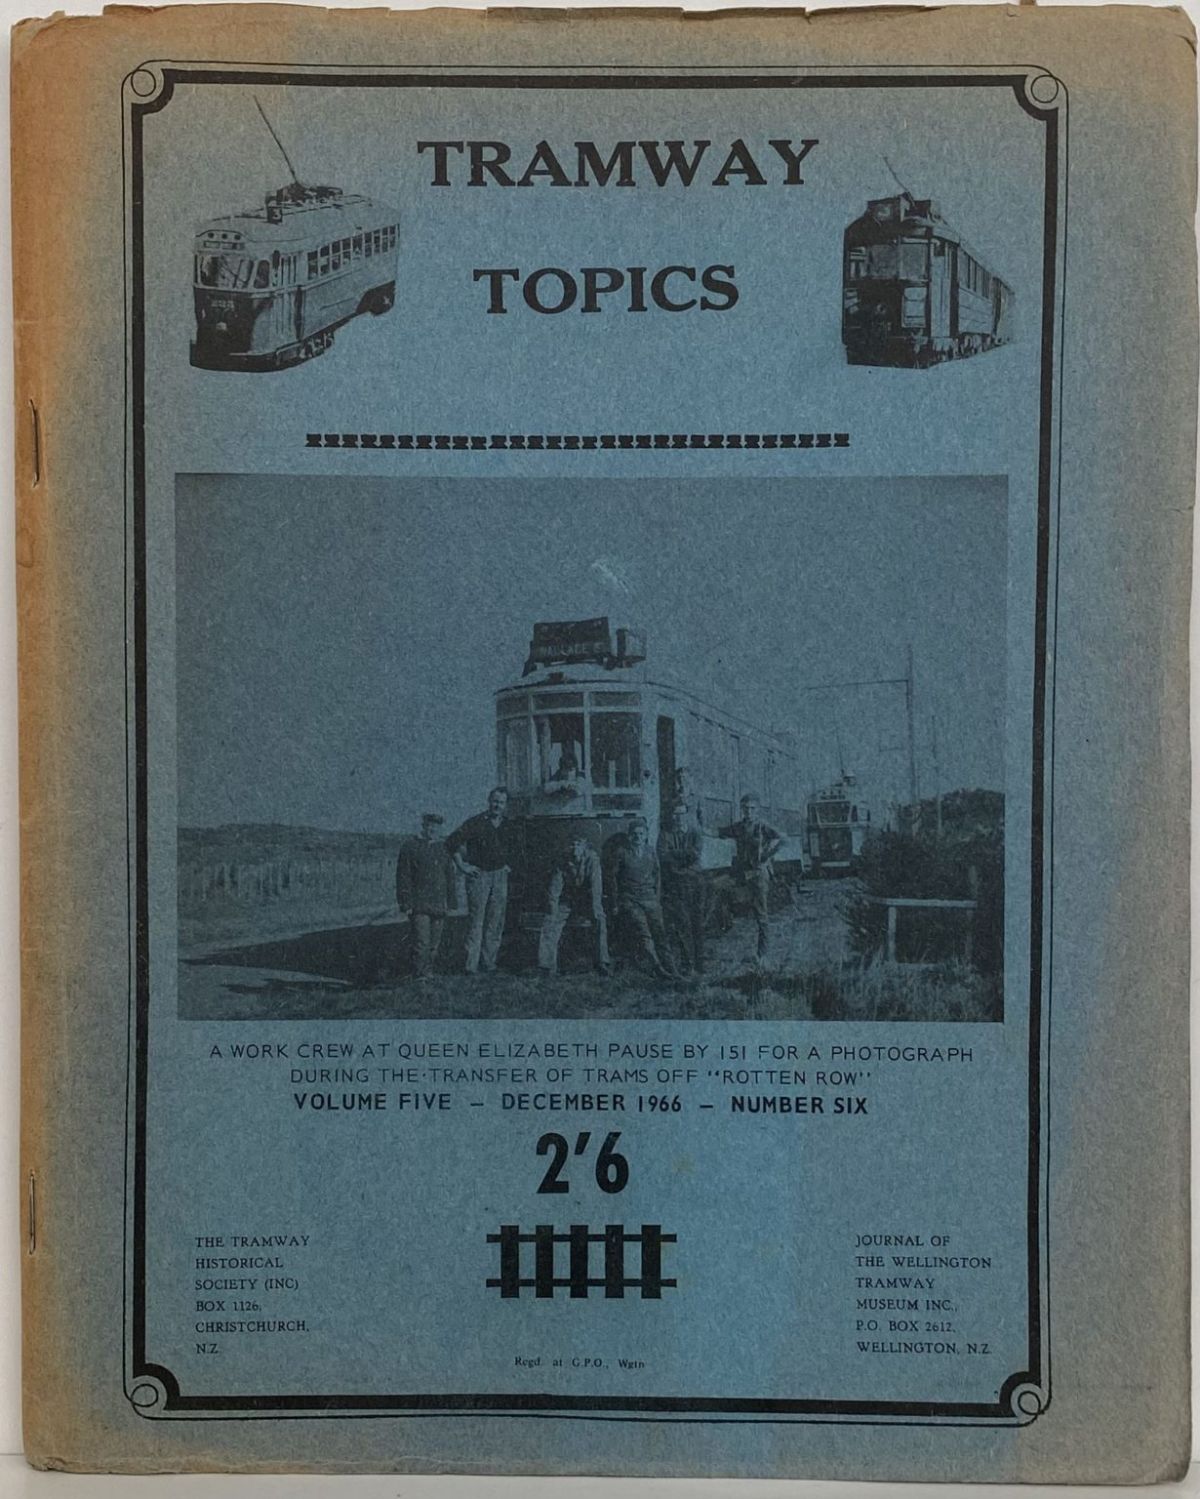 TRAMWAY TOPICS Vol 5, No 6, October 1966